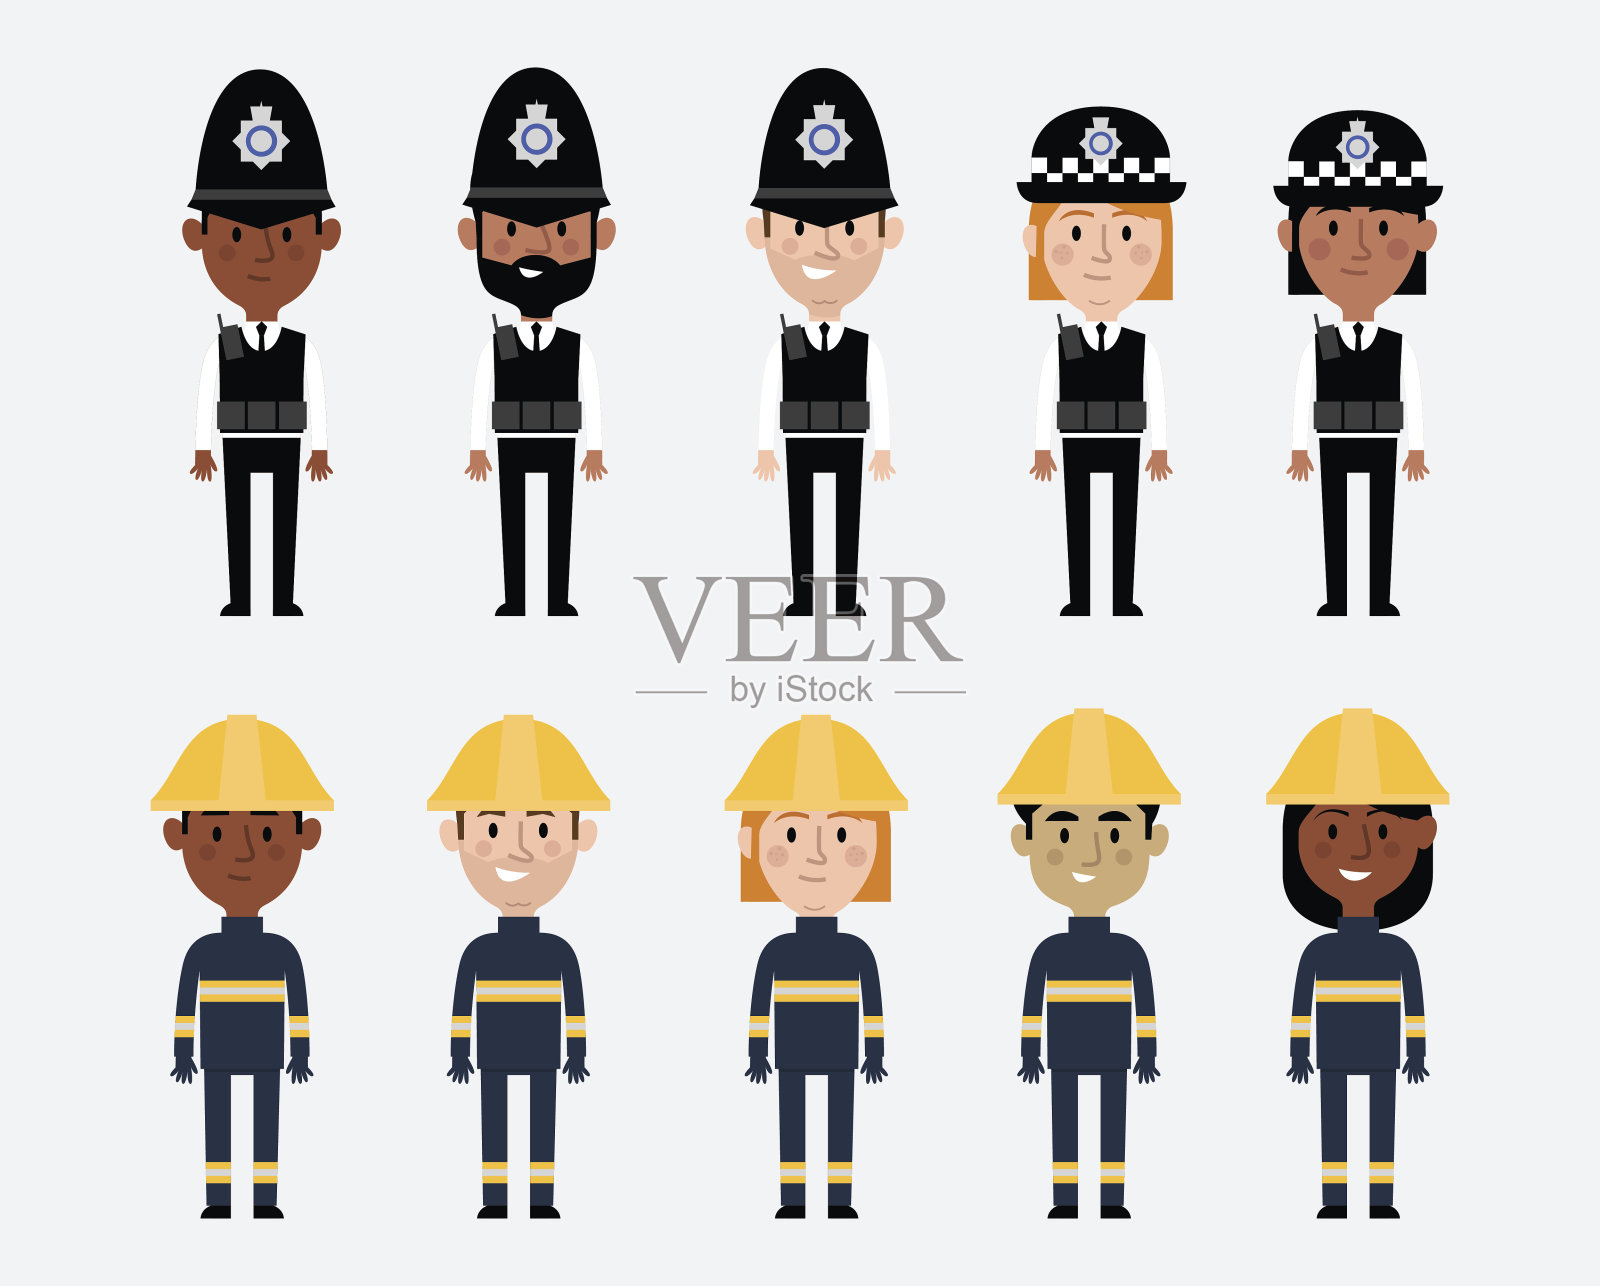 英国警察和消防部门的职业说明插画图片素材